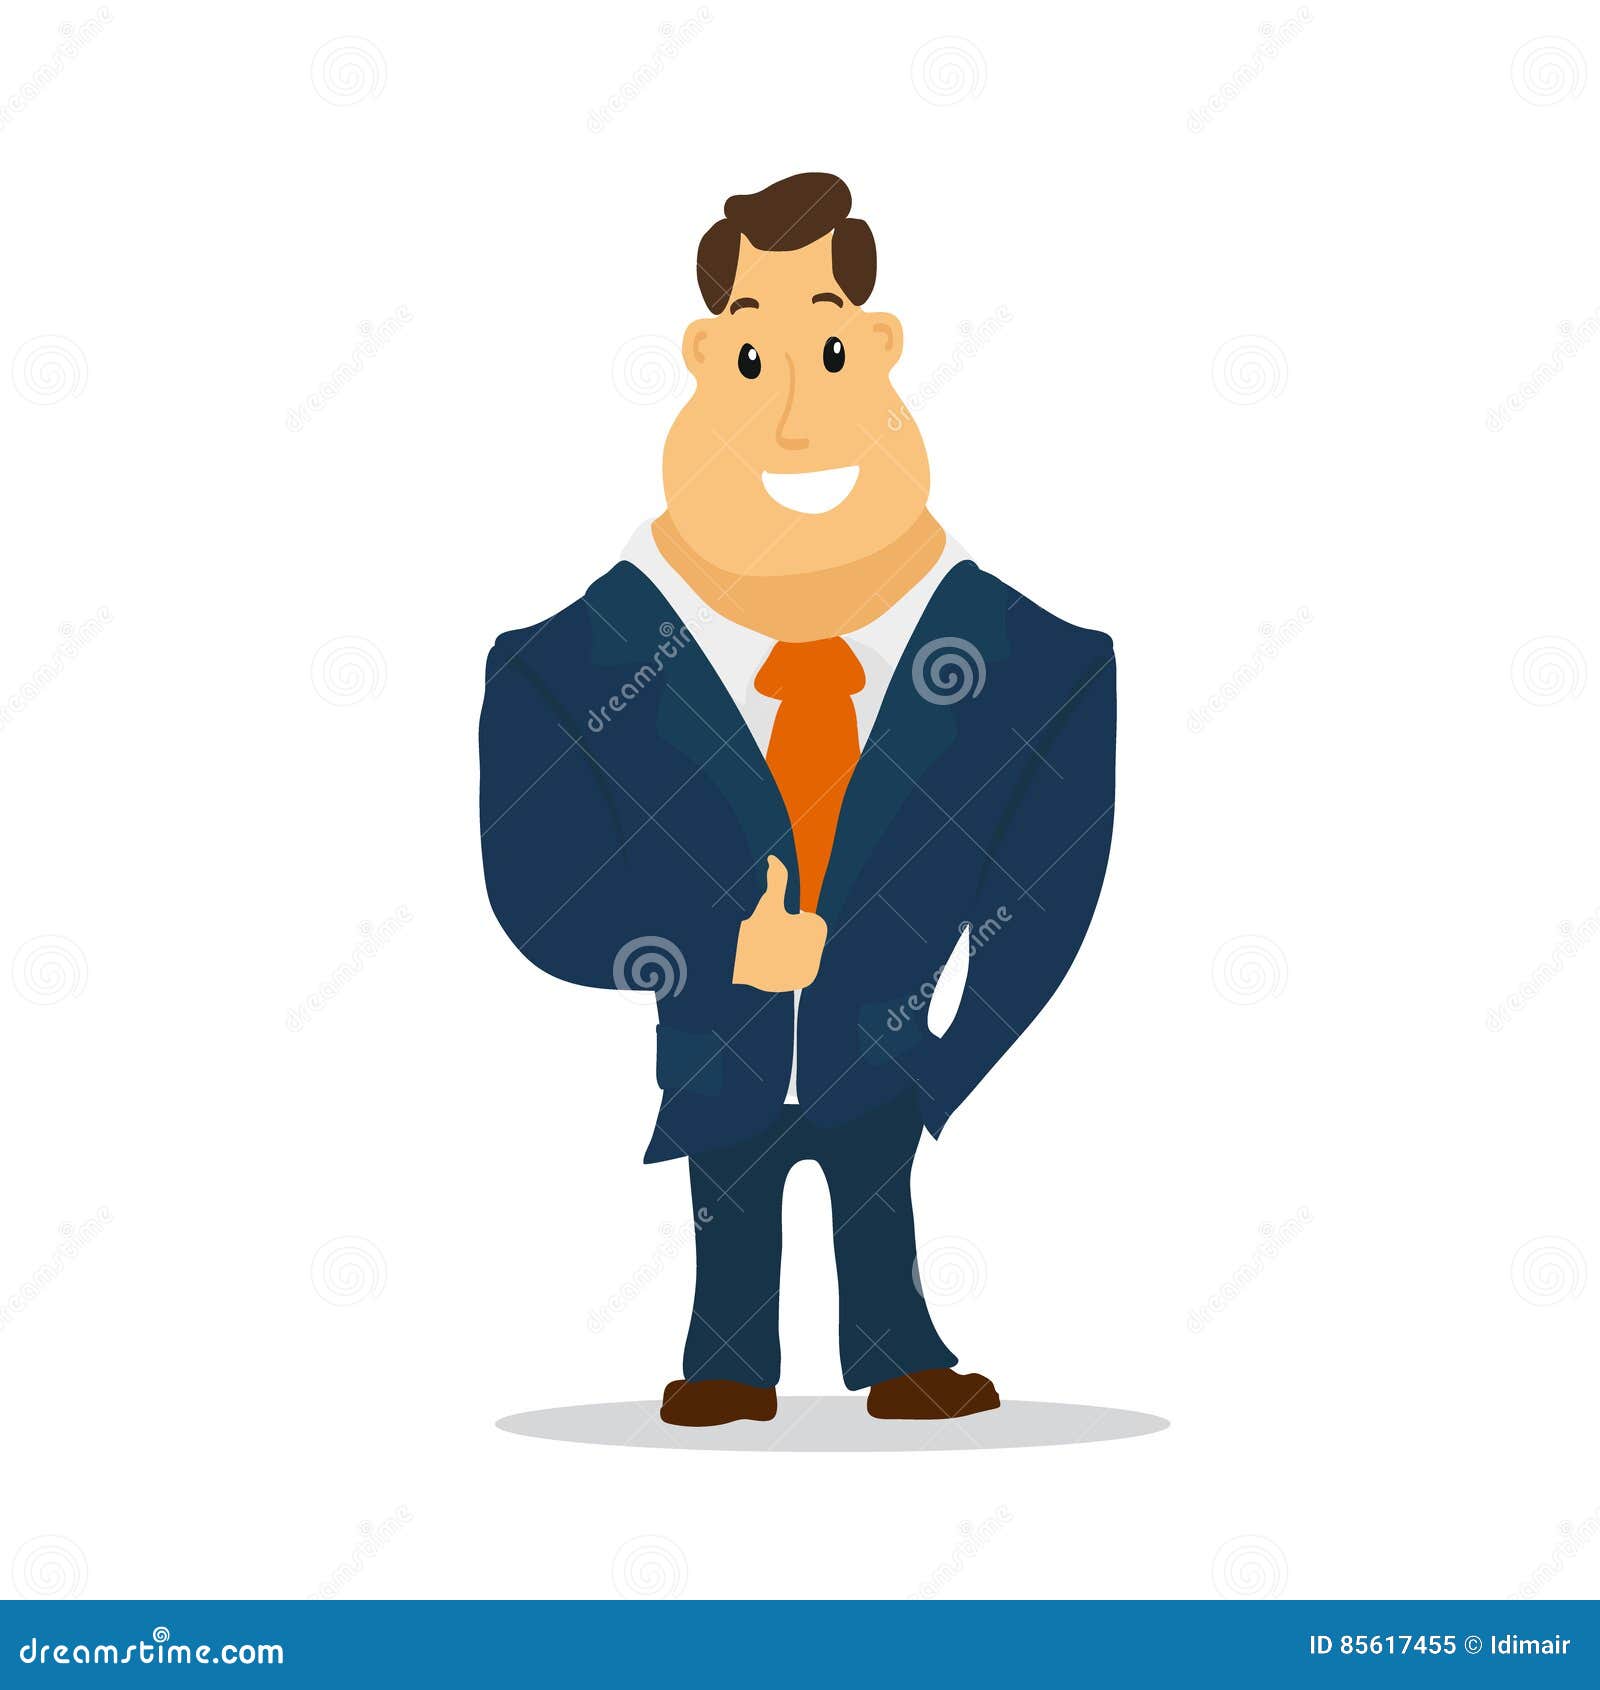 Businessman Cartoon Character in Blue Suit. Vector Stock Vector ...